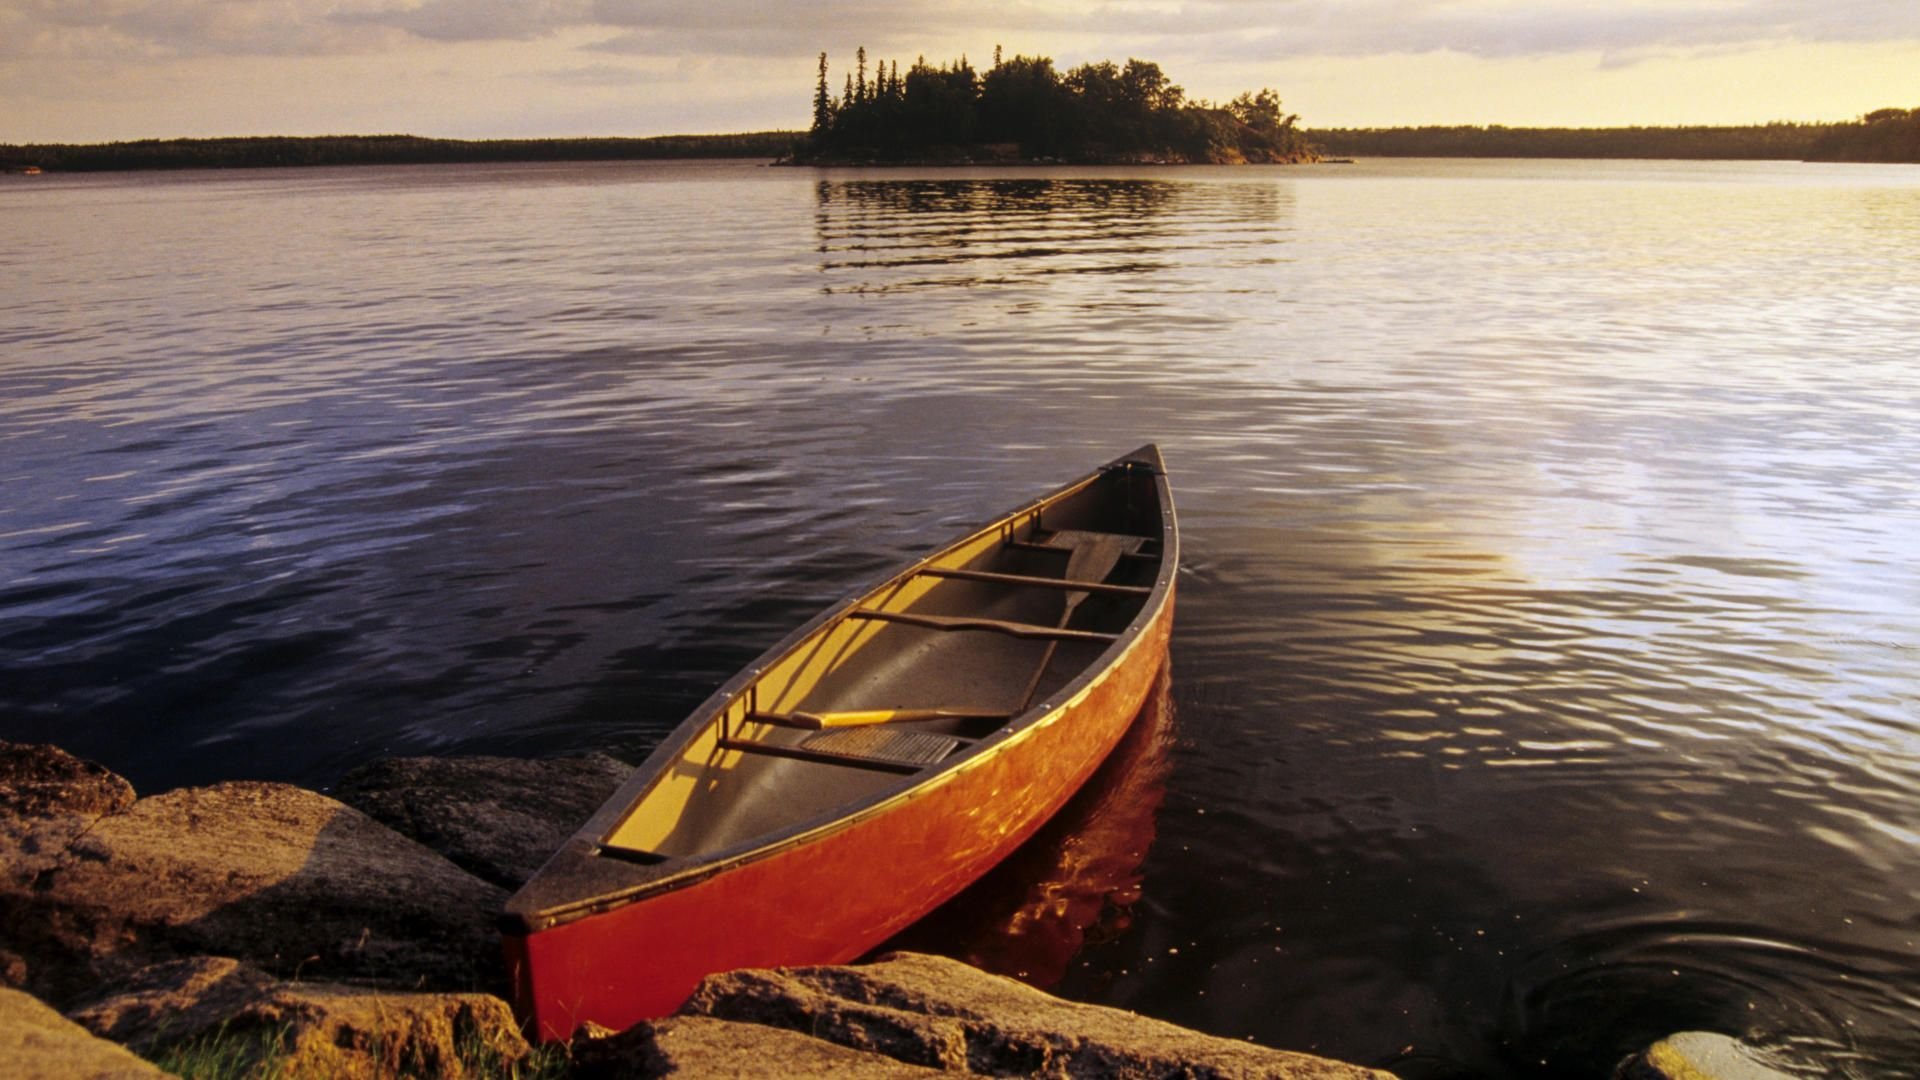 Лодка на озере